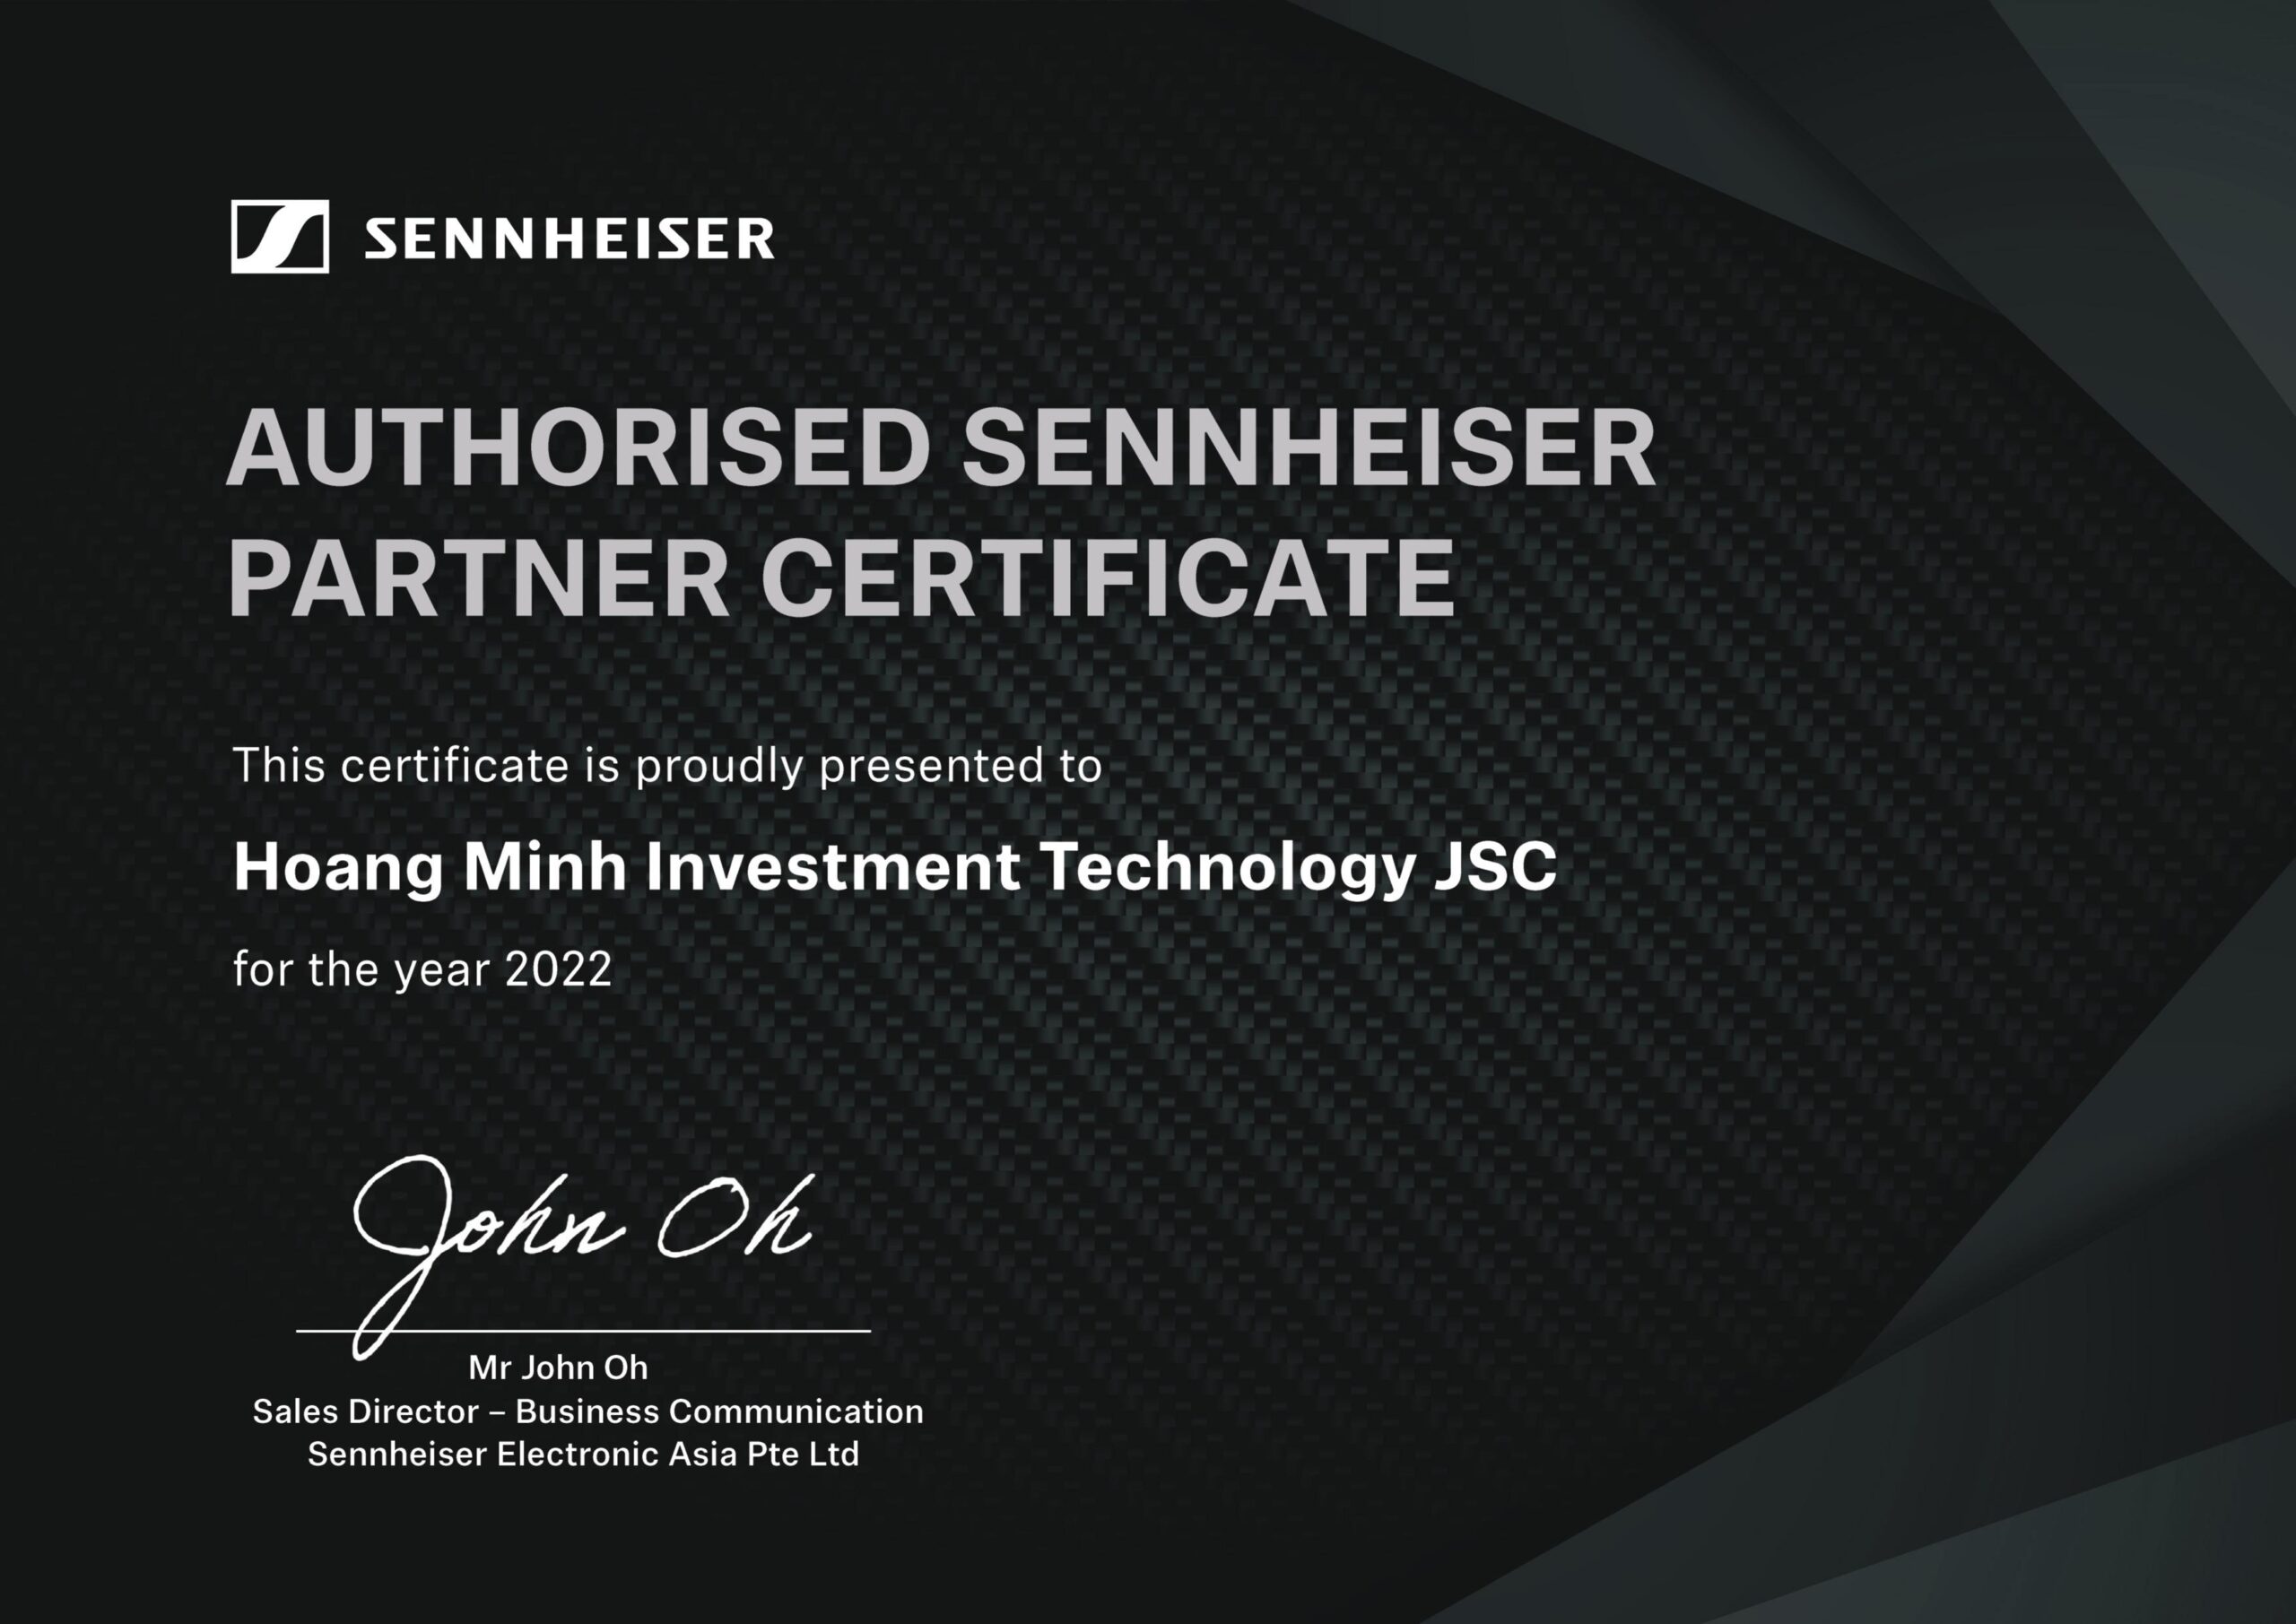 Bizcom 2022 Certificate Hoang Minh Investment Technology Jsc Sennheiser (1)